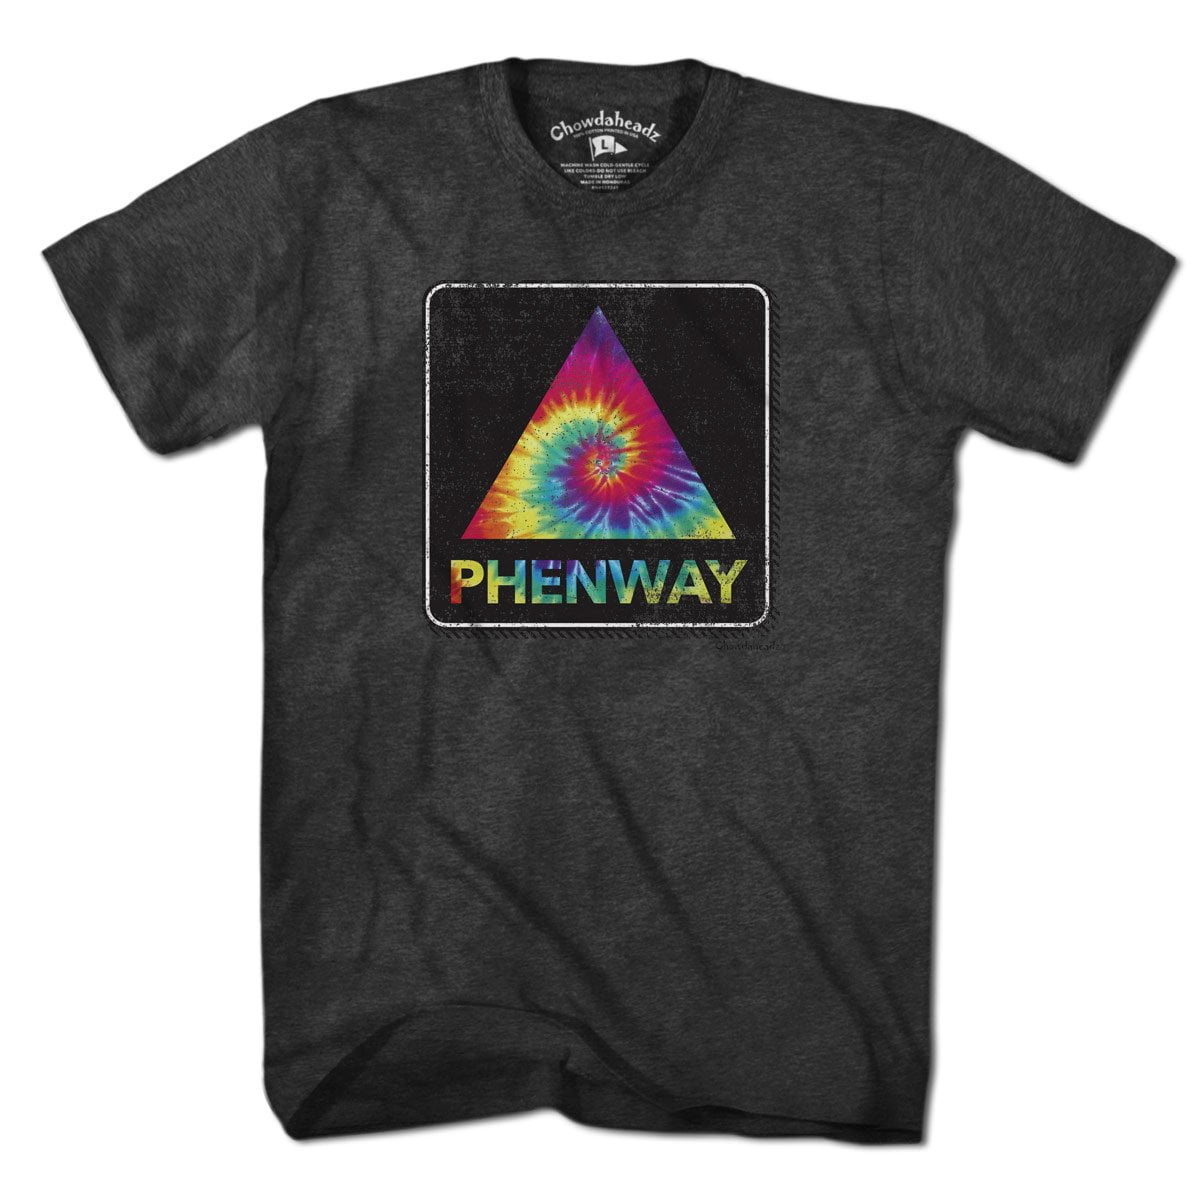 Phenway Tie Dye T-Shirt - Chowdaheadz